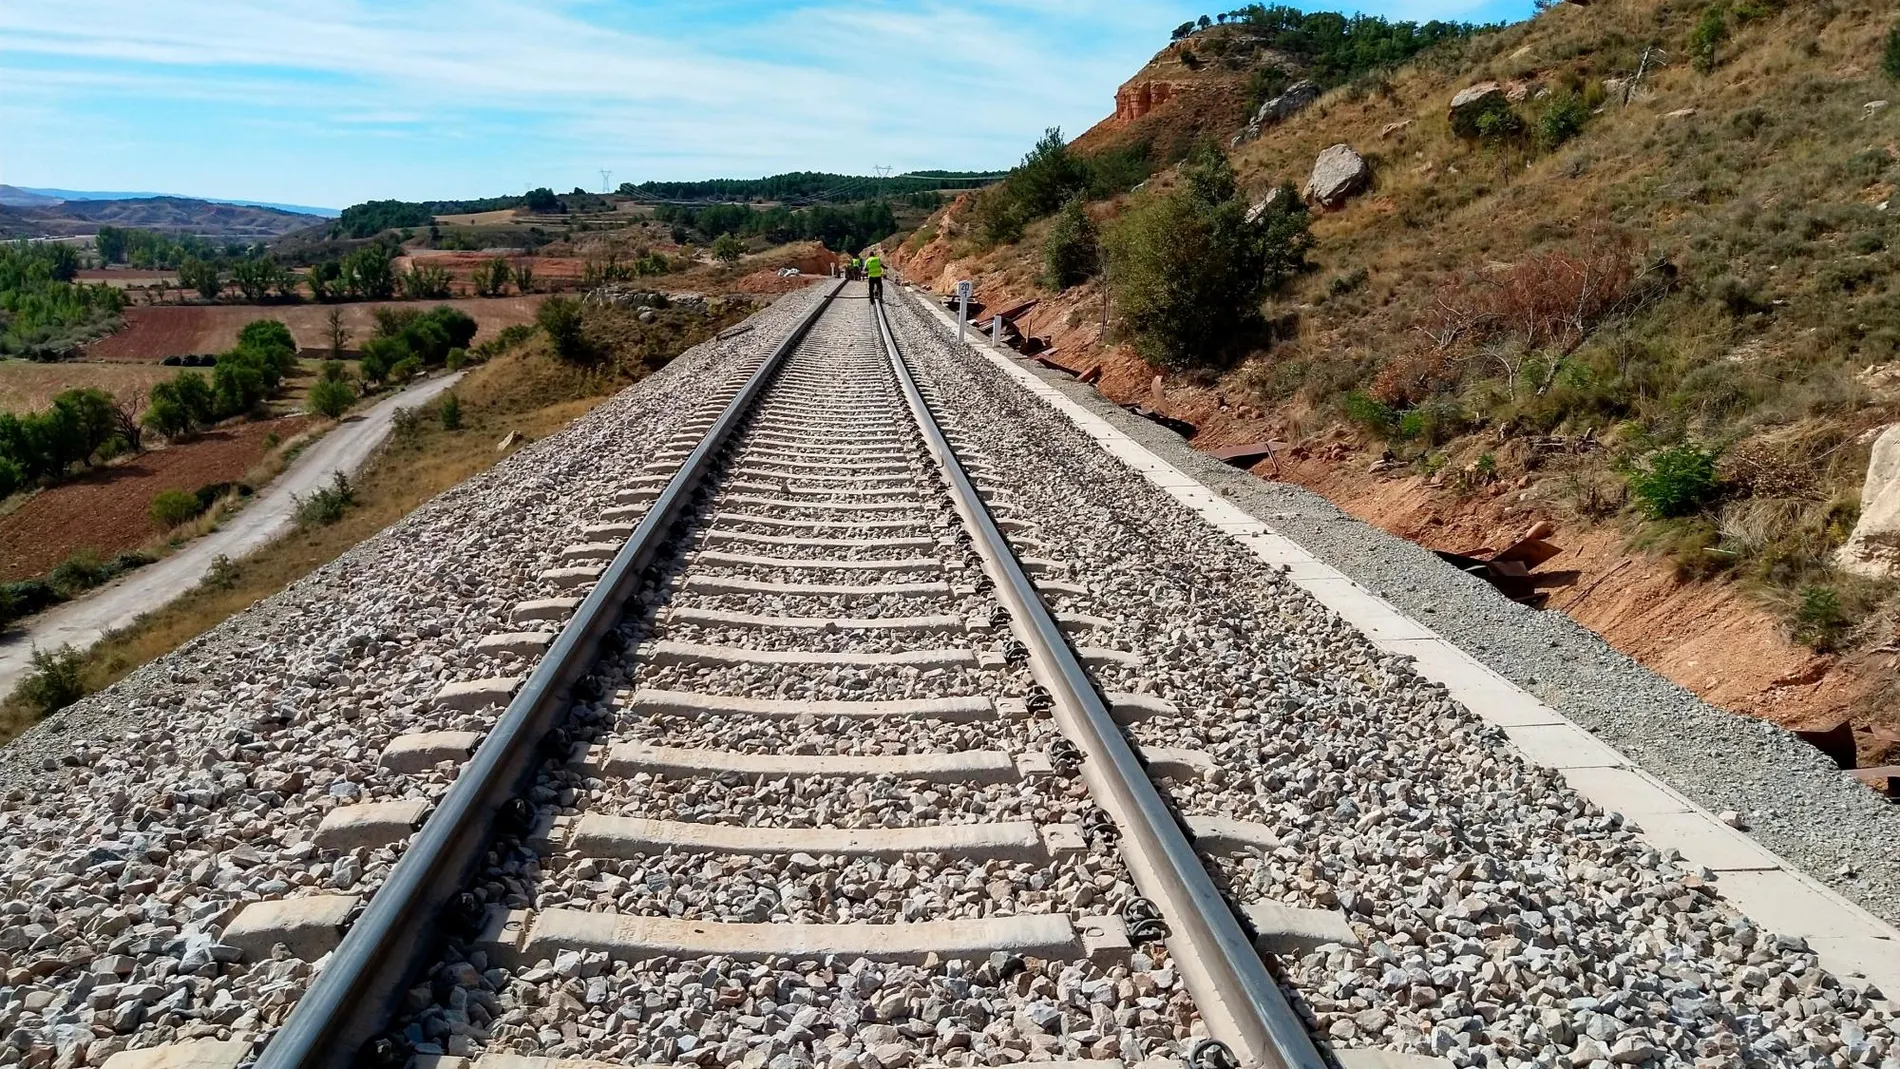 Desde hoy mismo se reanuda la circulación ferroviaria entre Valencia y Alicante, cuyas vías estaban afectadas tras el temporal